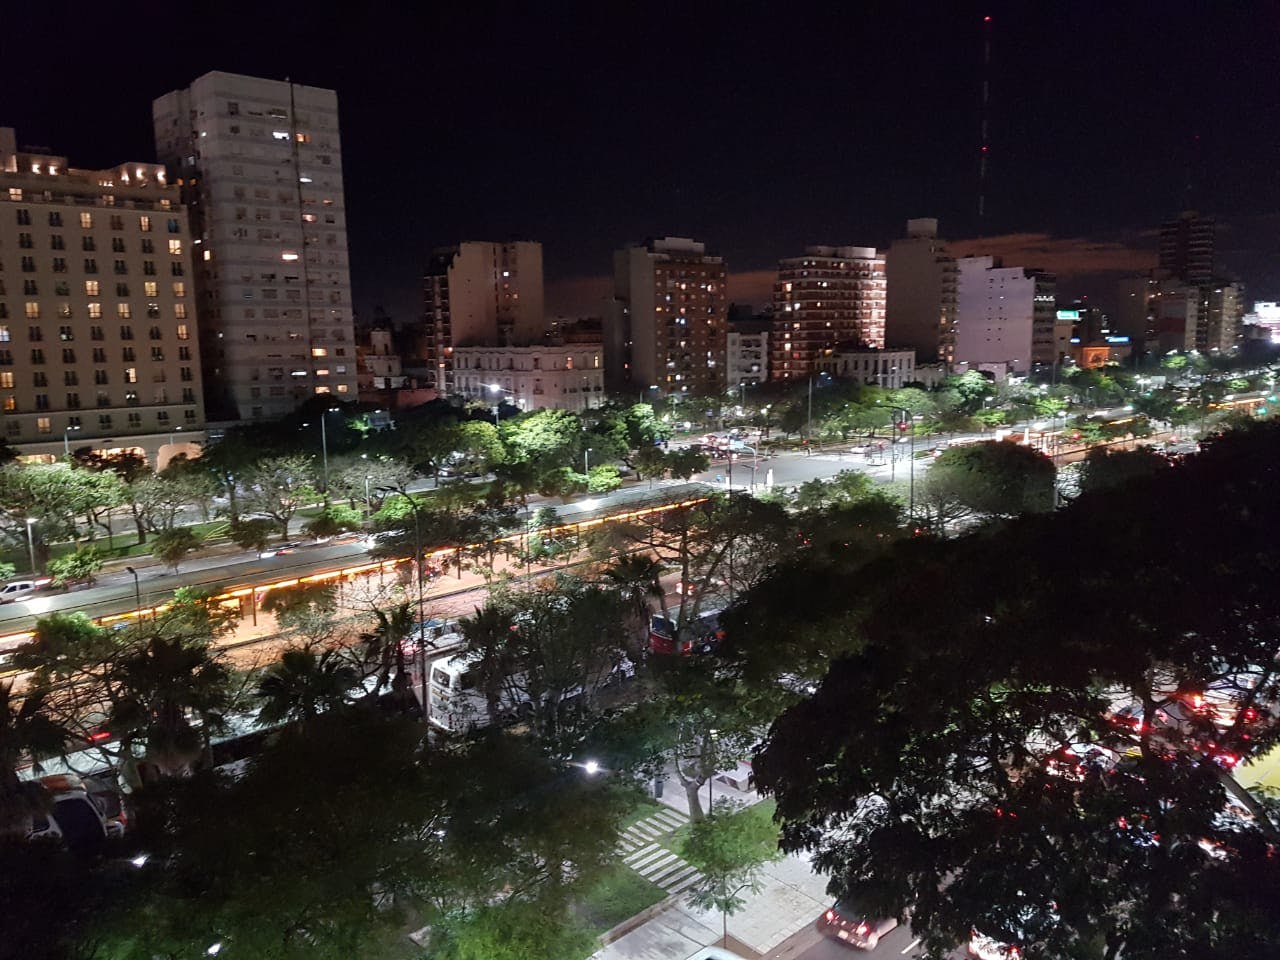 Argentijns diner met prachtig uitzicht op 9 de Julio Avenue